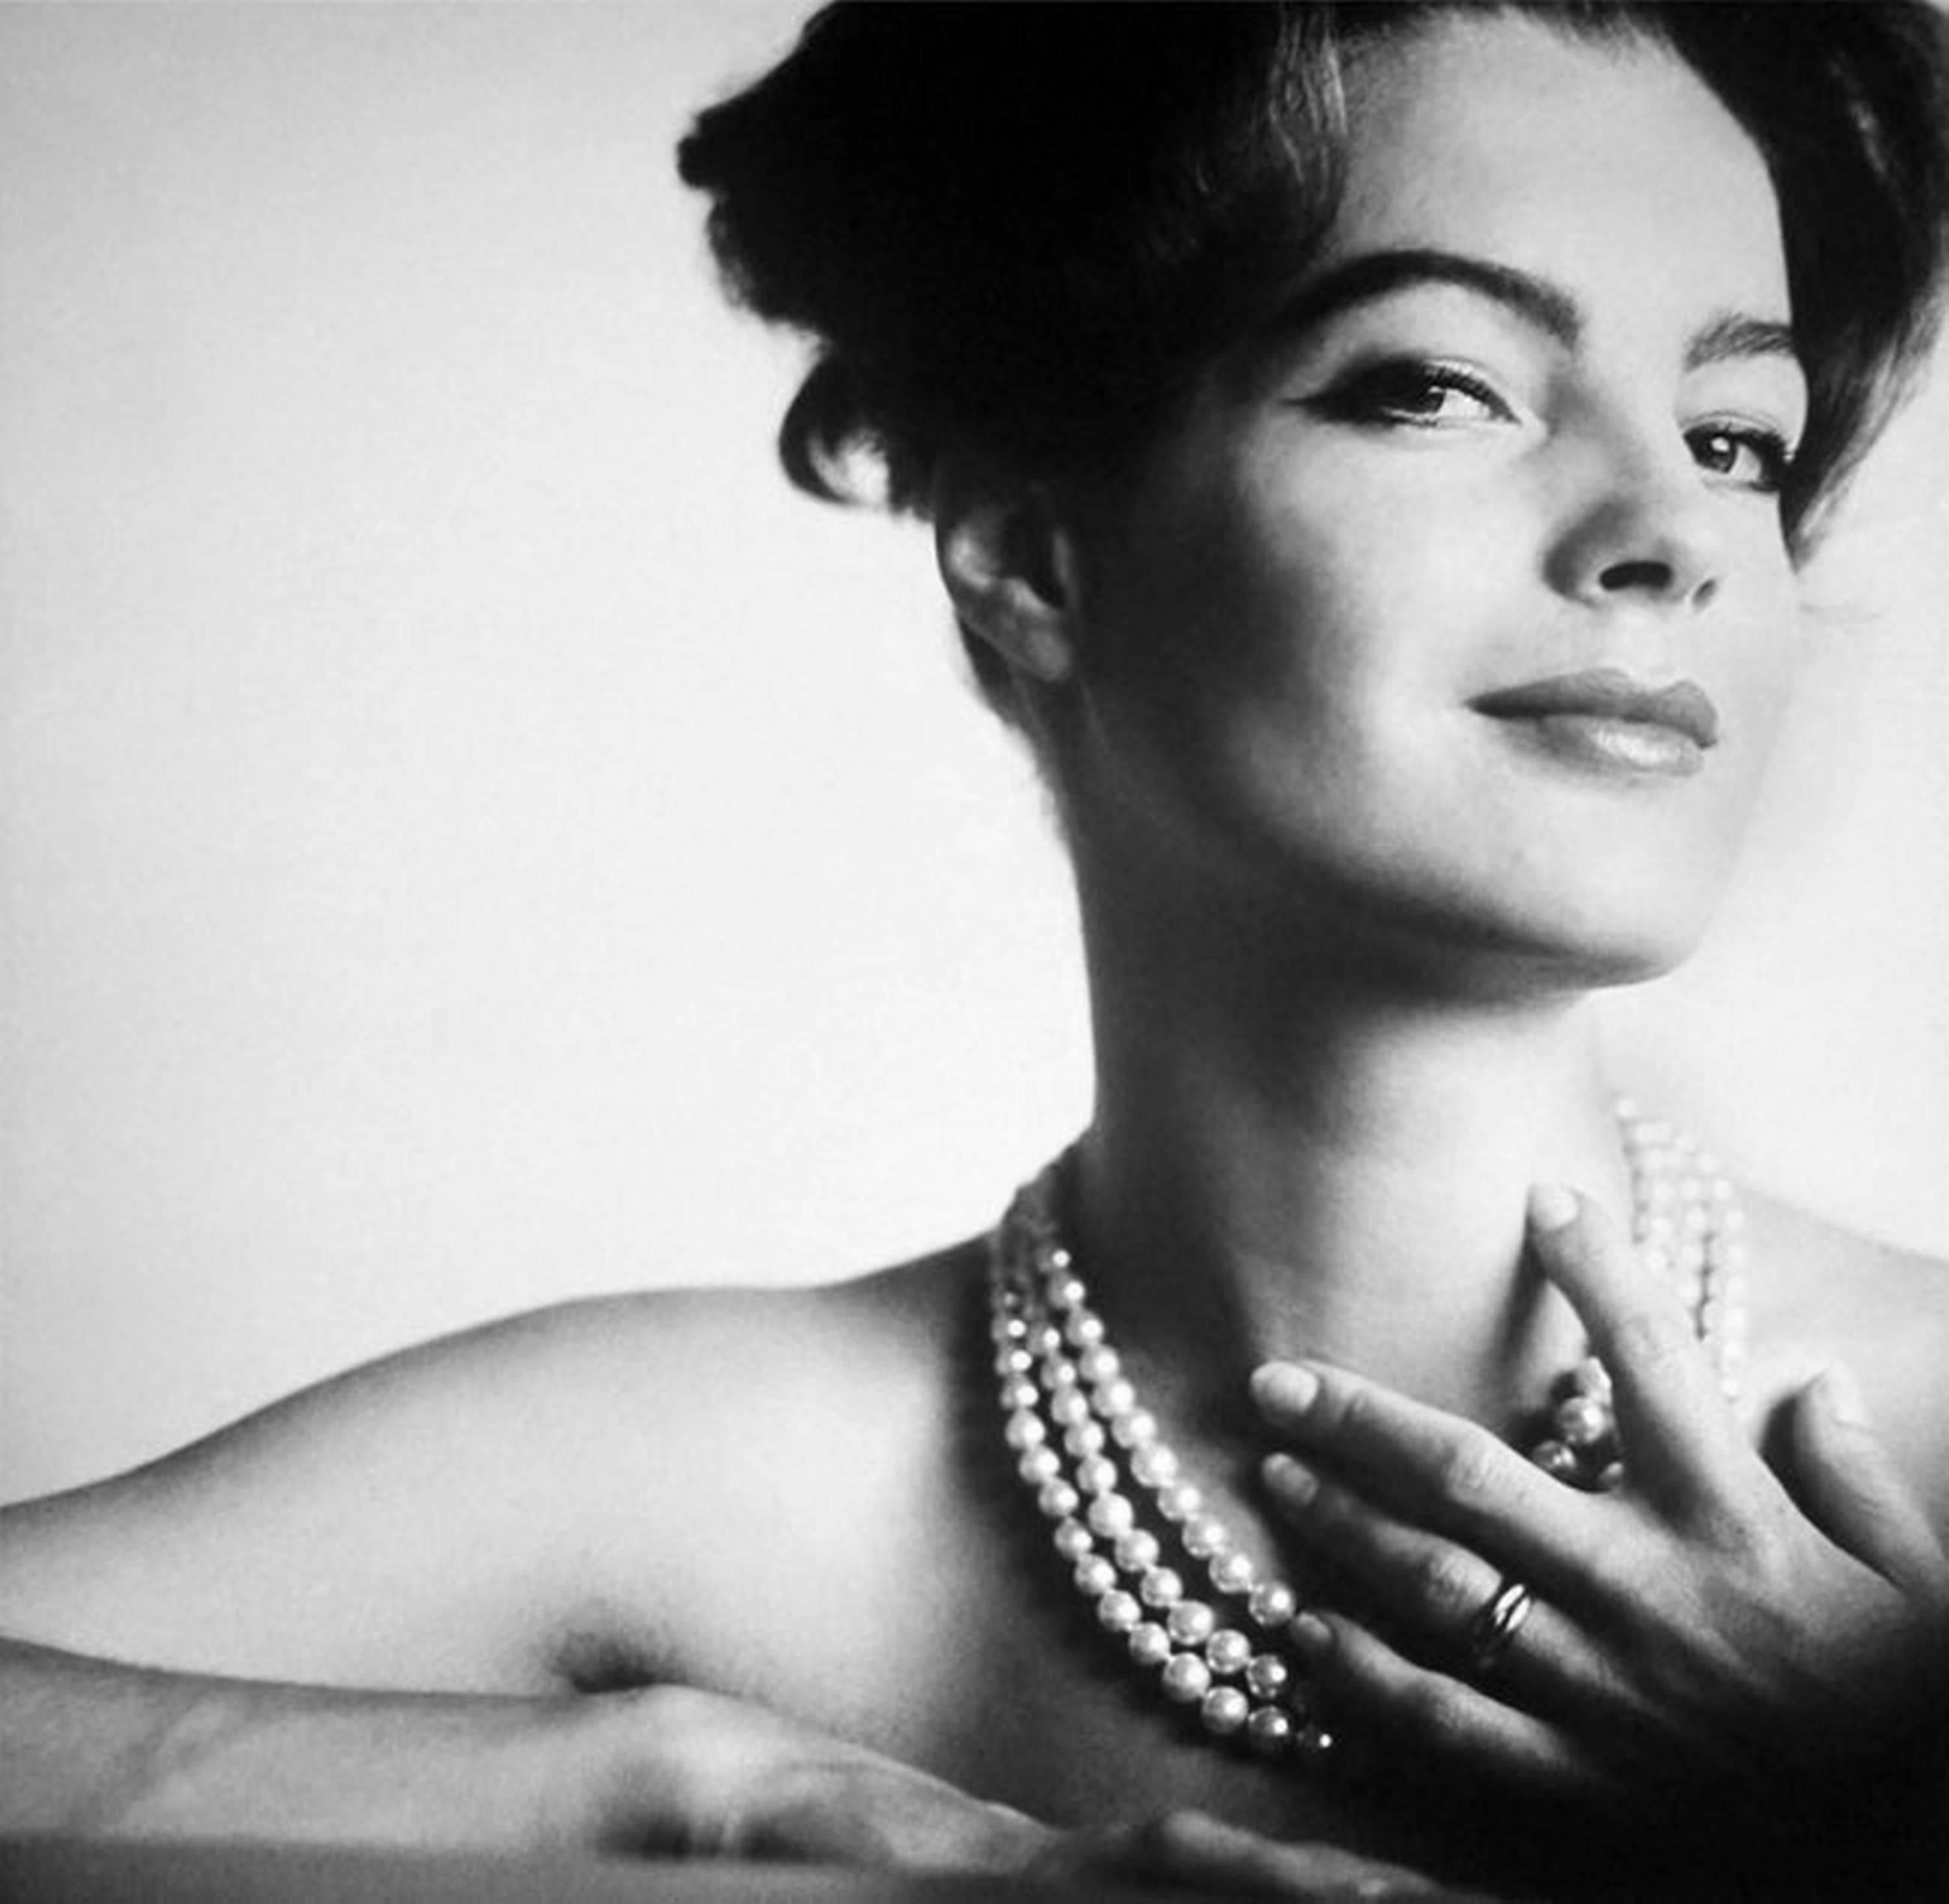 Douglas Kirkland Black and White Photograph – Porträt von Romy Schneider, fast nackt, nur mit einer Perlenkette, die sie berührt